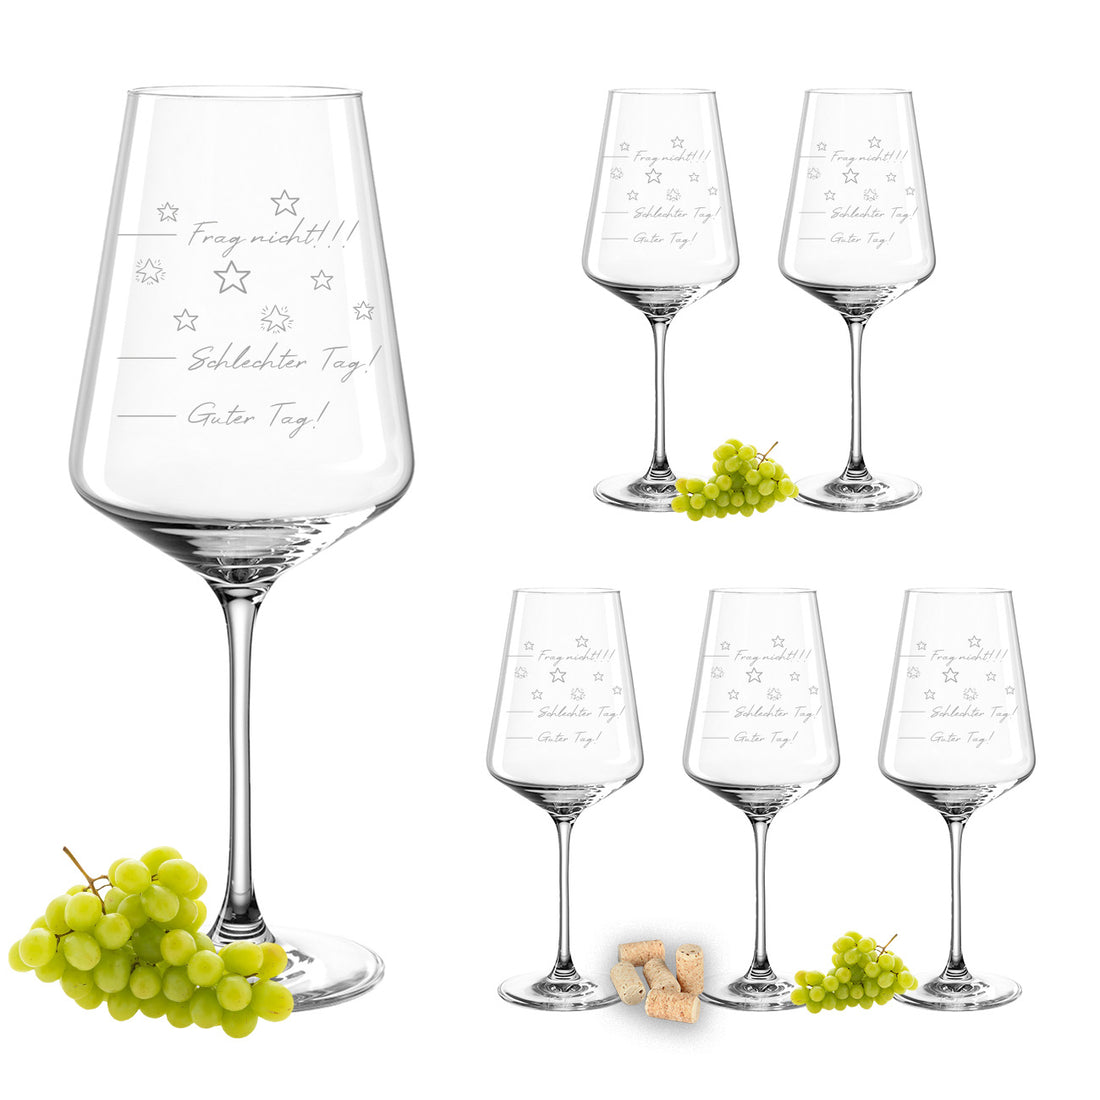 Weinglas mit Gravur Leonardo Puccini "GUTER TAG SCHLECHTER TAG!!" Set mit 6 Gläser